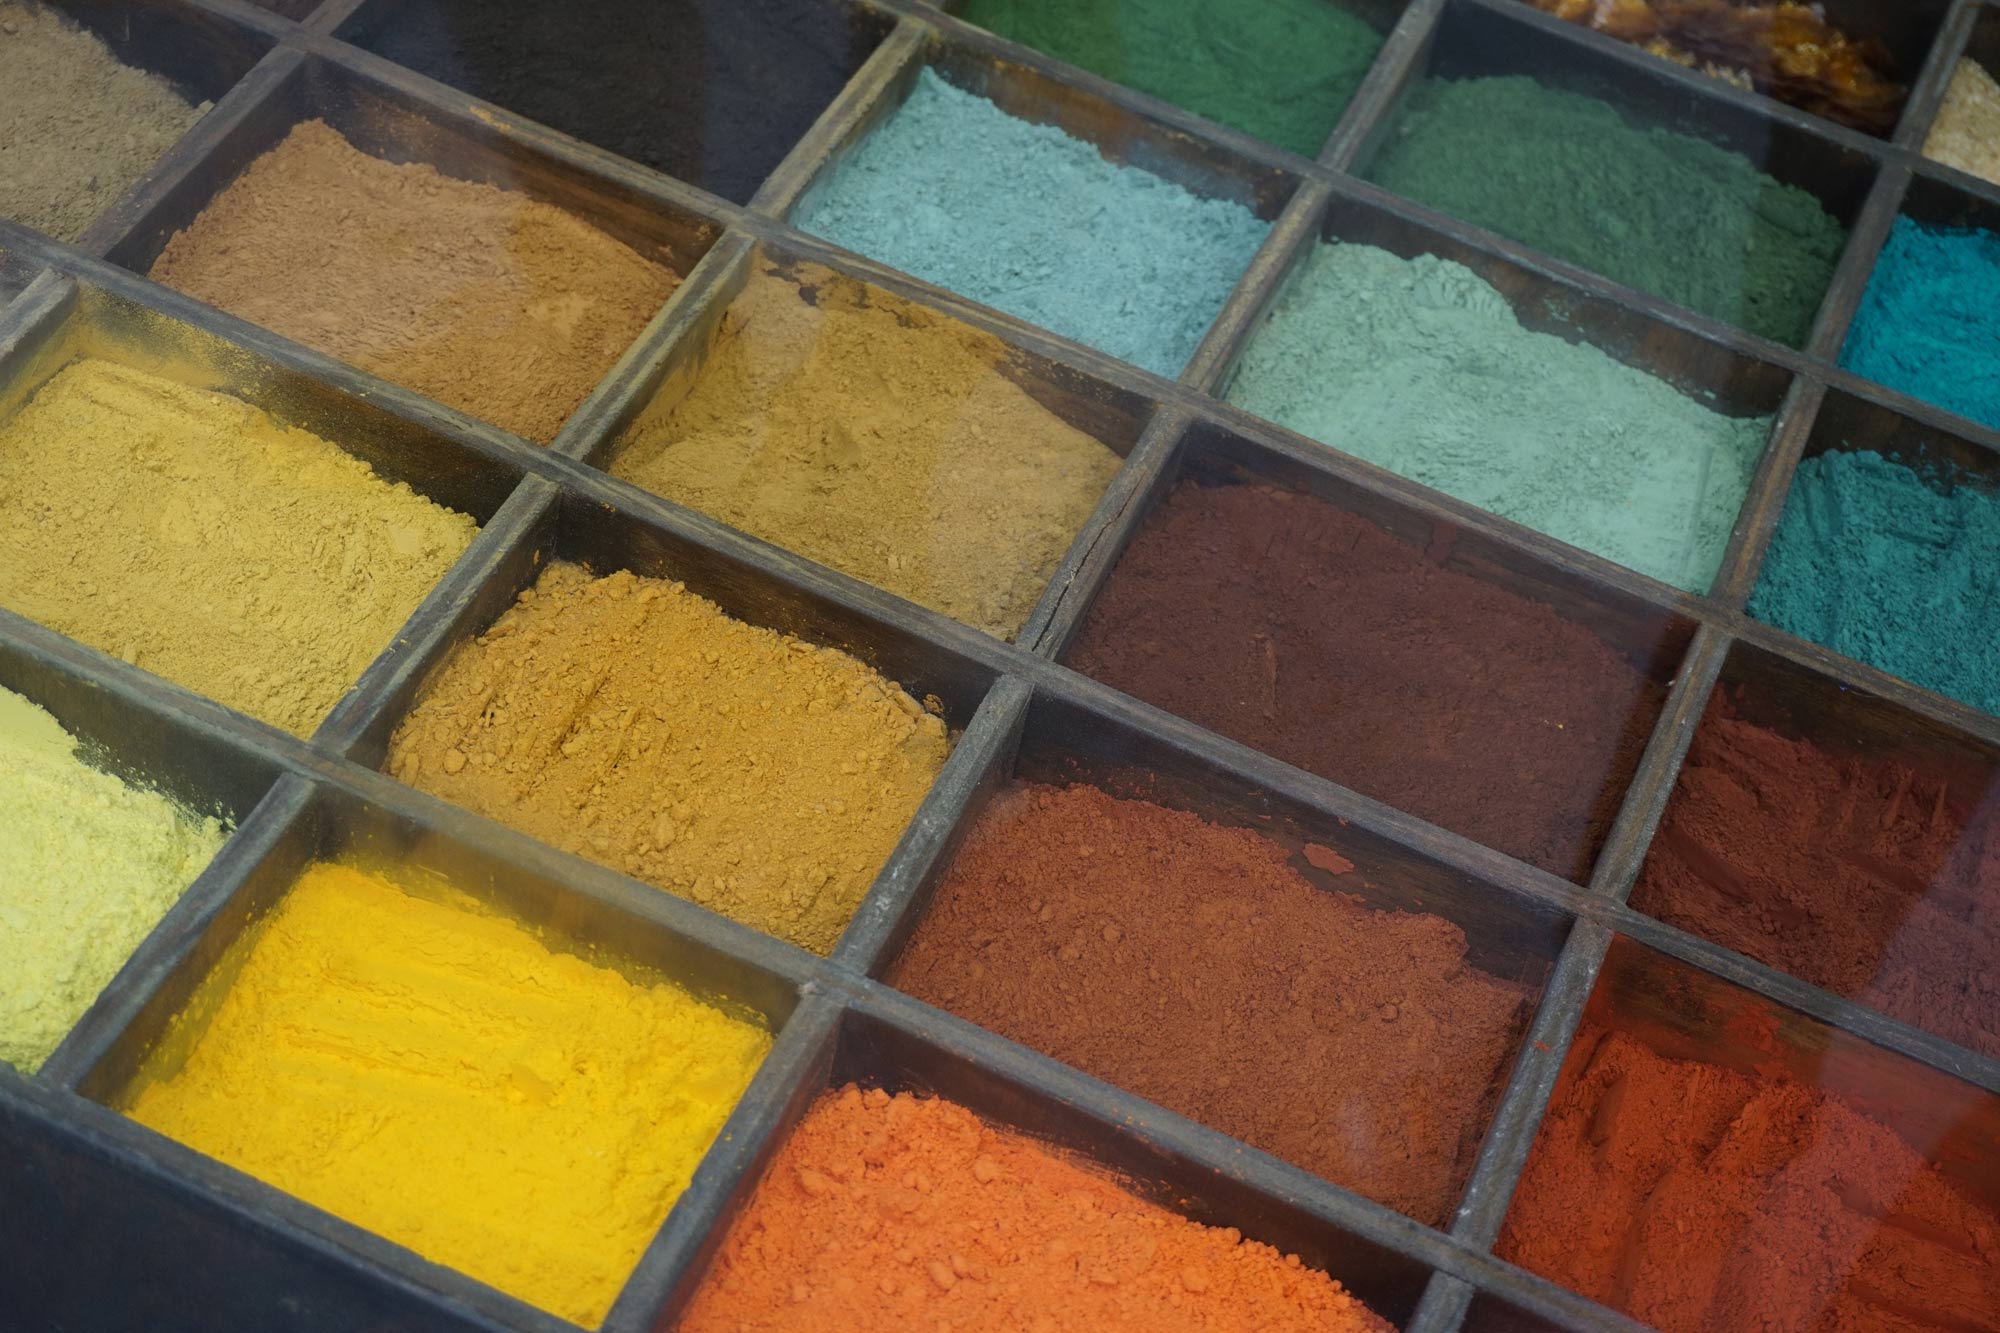 Naturgemäße Bodenbeläge Gerhard Koch, Die Vielfalt der Farben als Pigmente in einem Sortierkasten oder Farbkasten für Künstler und zum Färben 